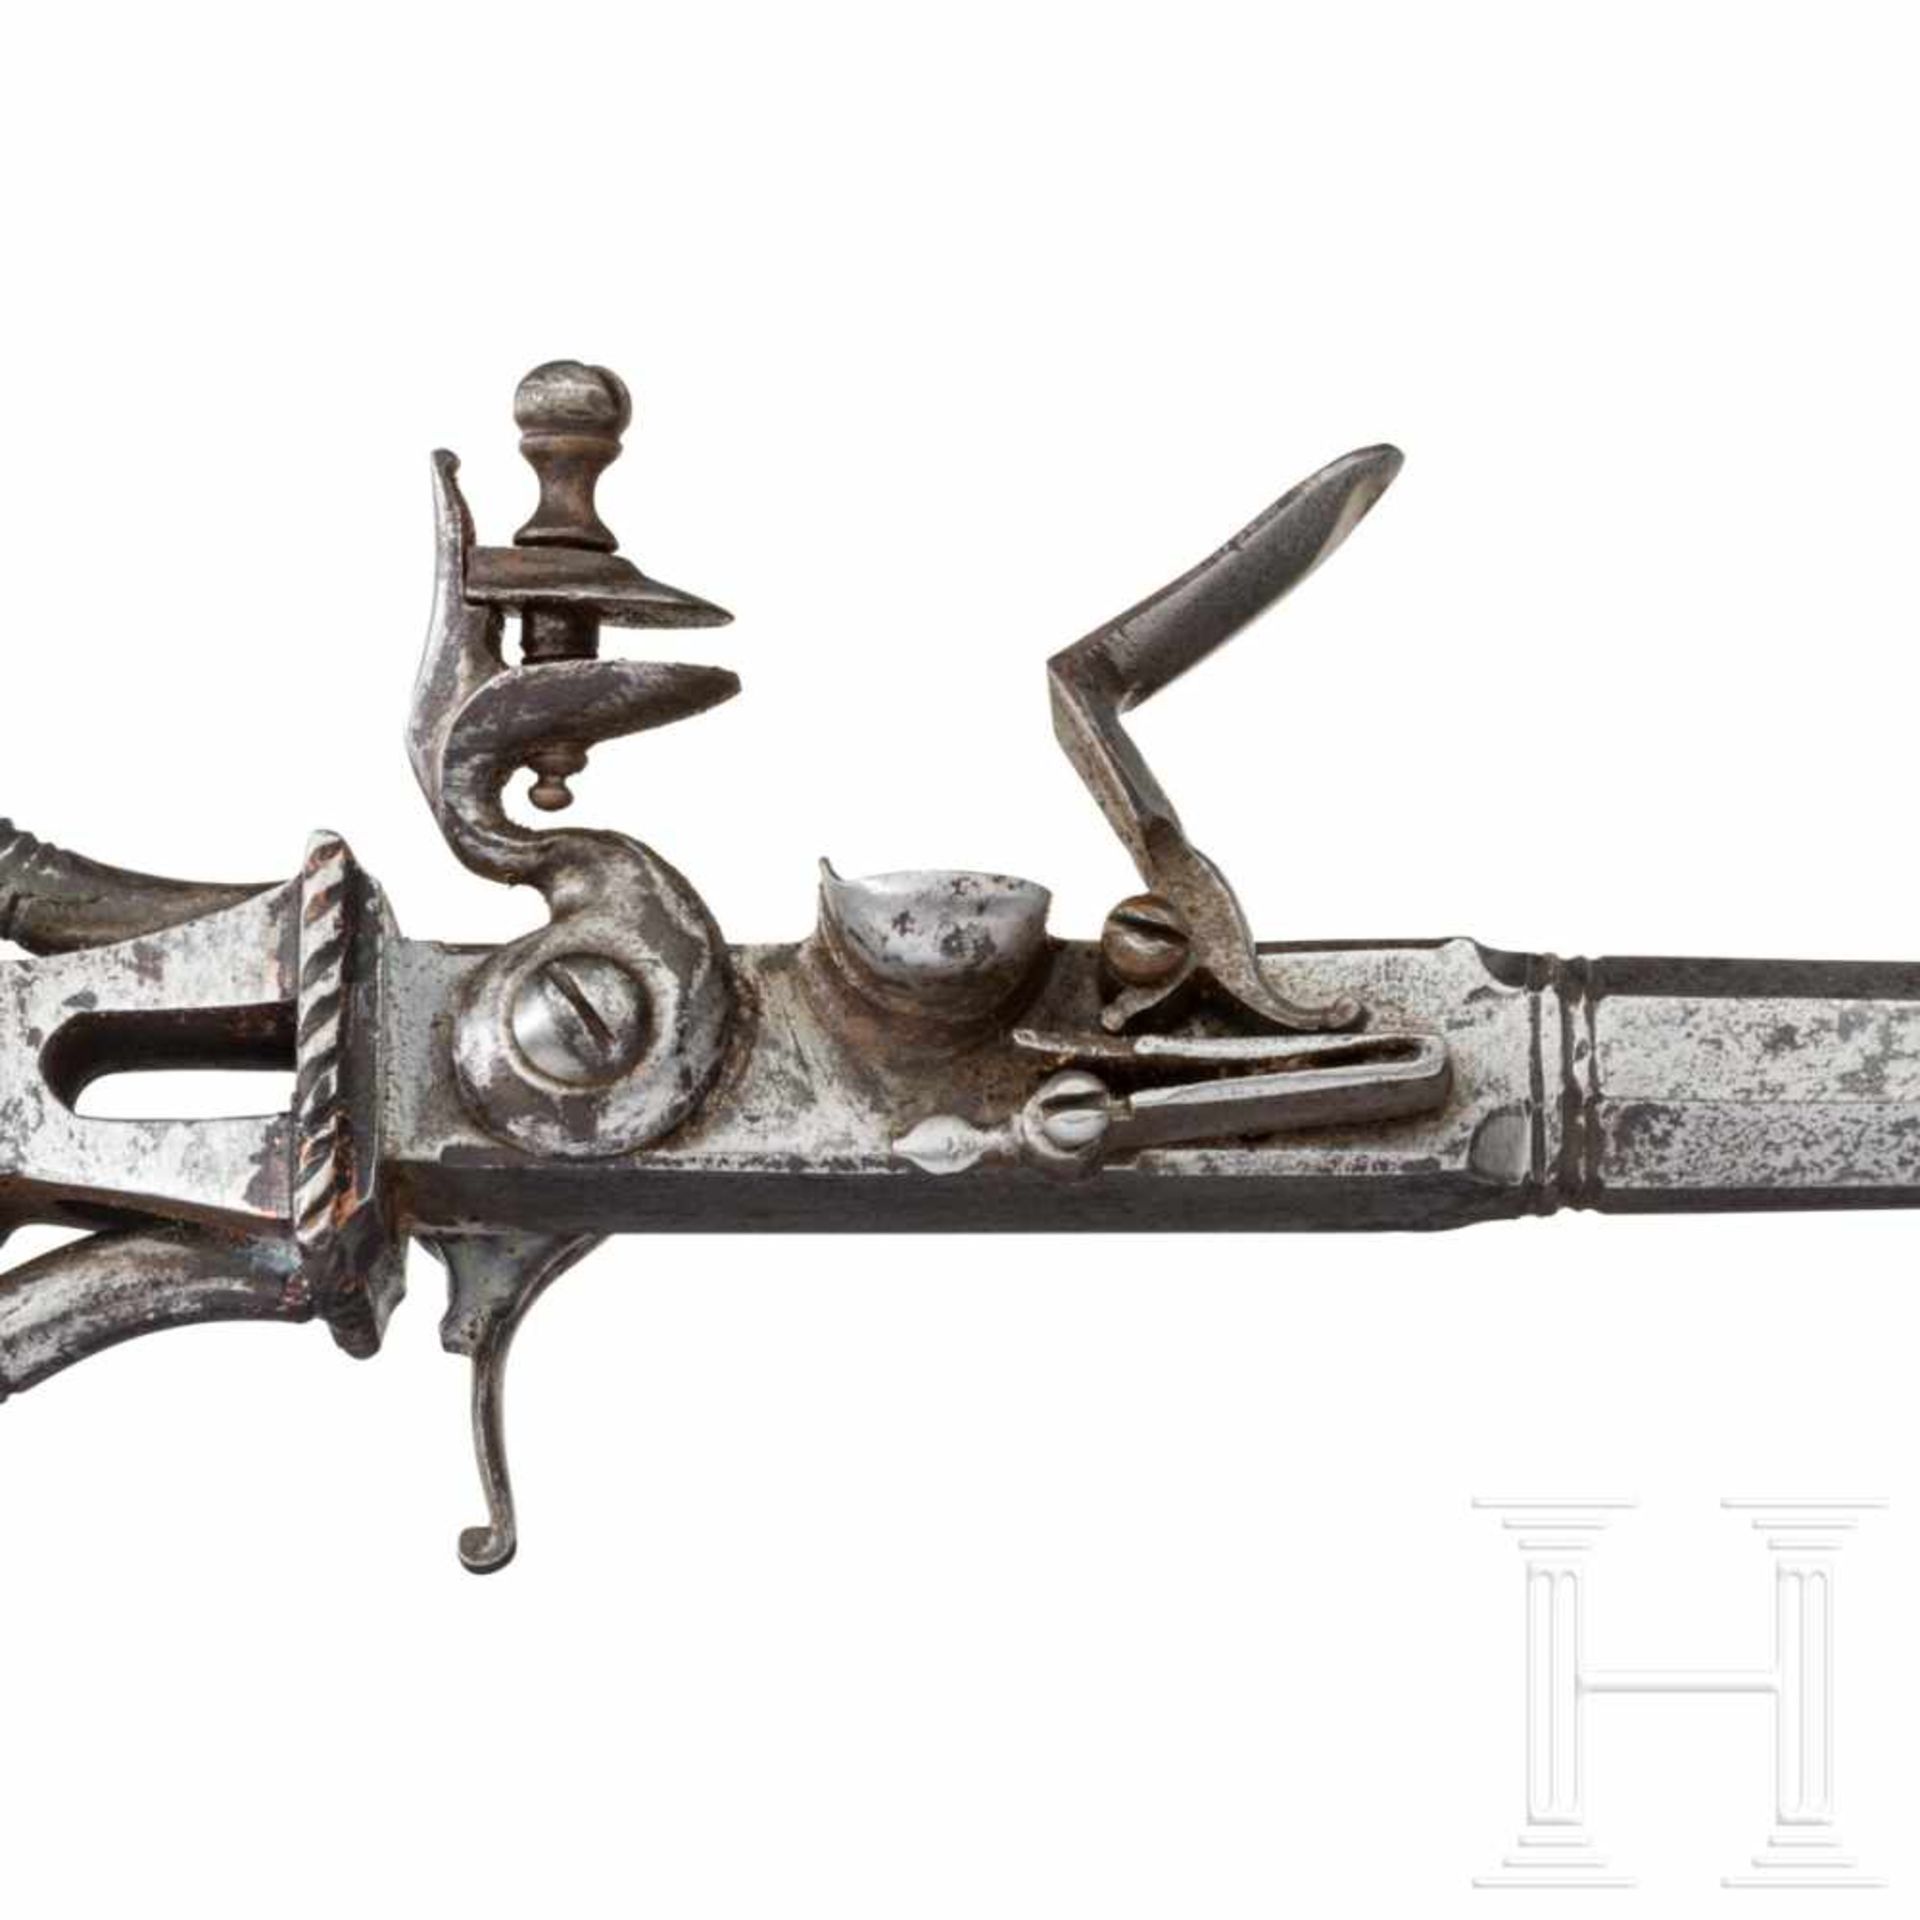 Schießschlüssel, Italien, Historismus im Still des 18. Jhdts. - Bild 3 aus 5